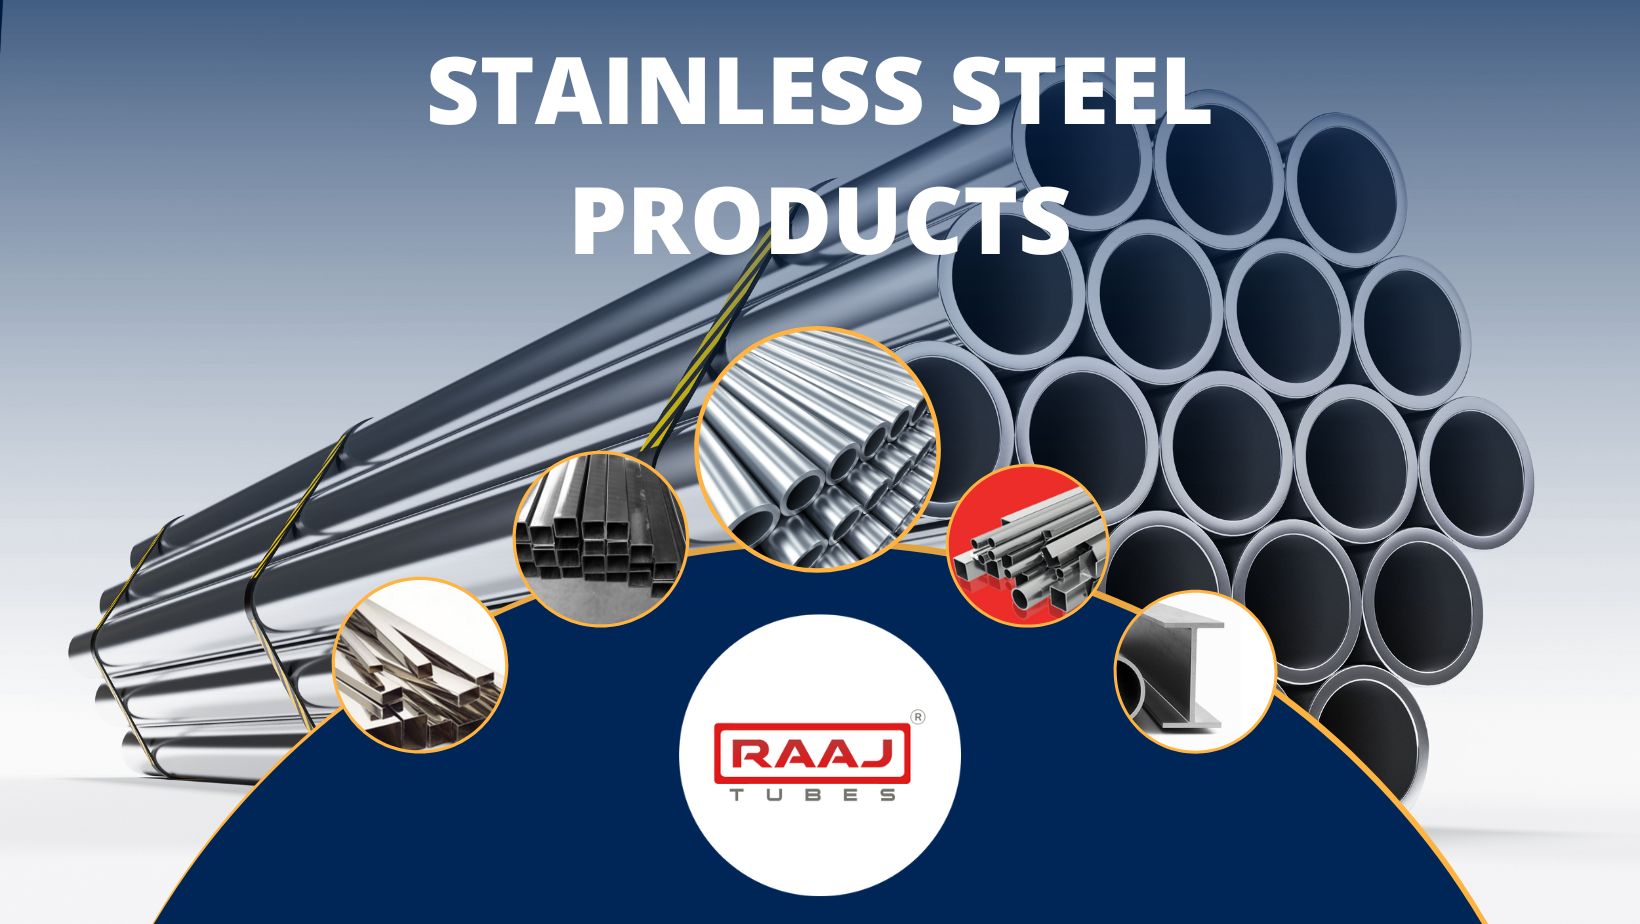 Stainless Steel Products - Raaj Tubes